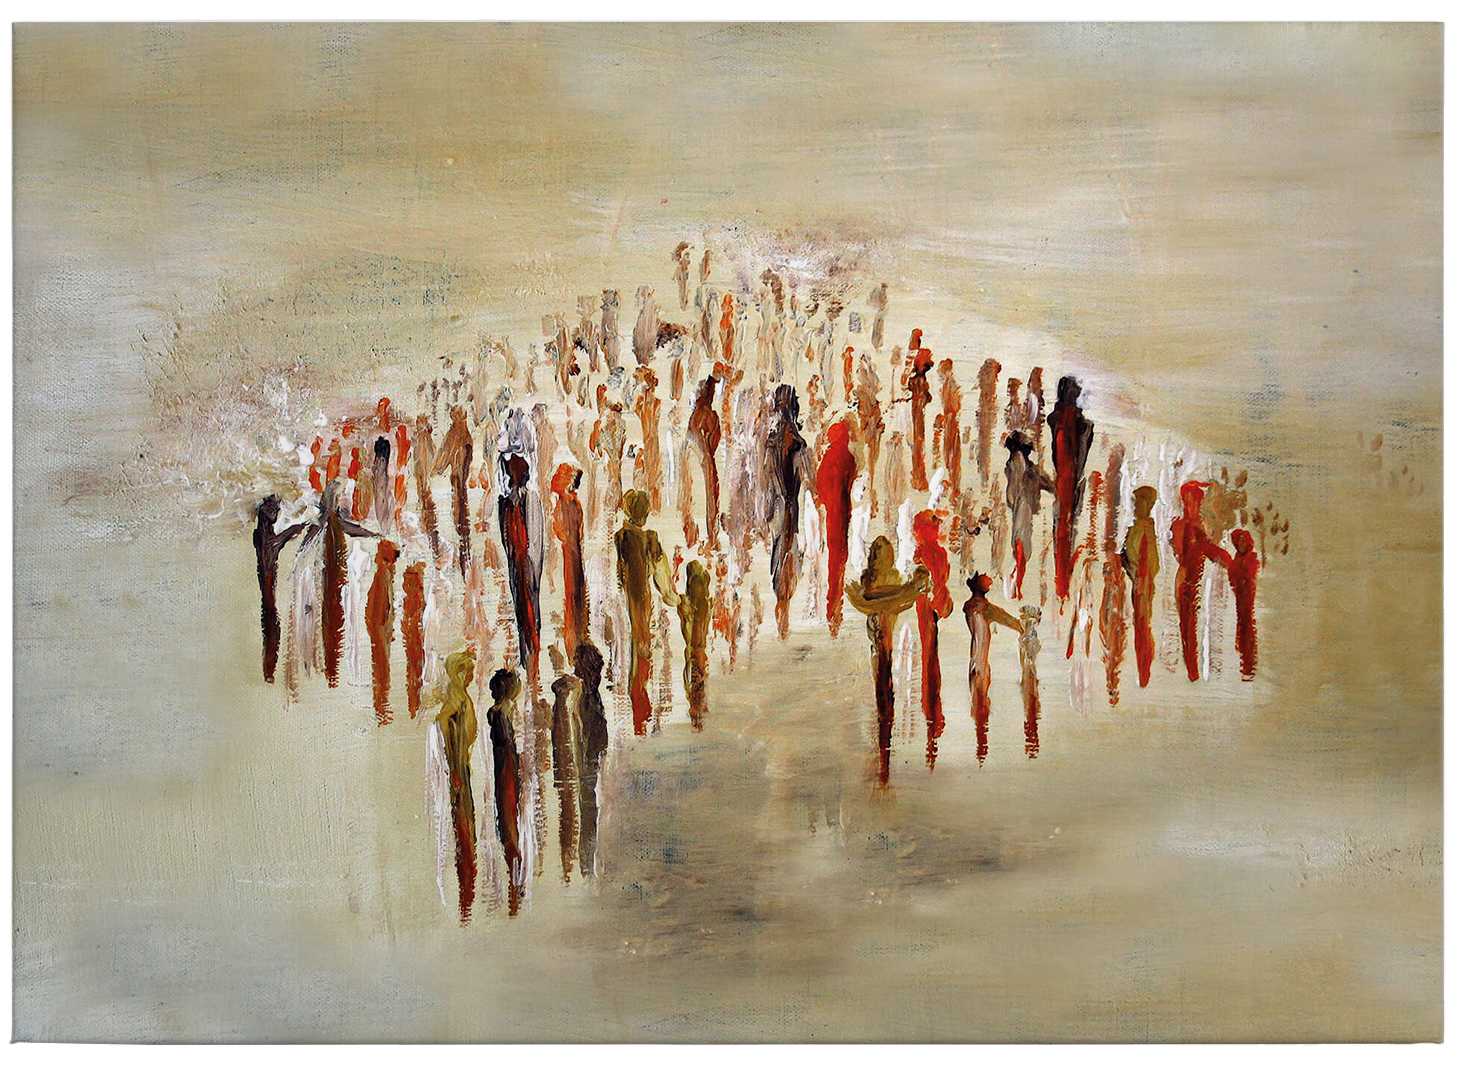             Tableau sur toile Art de Melz "People 02" - 0,70 m x 0,50 m
        